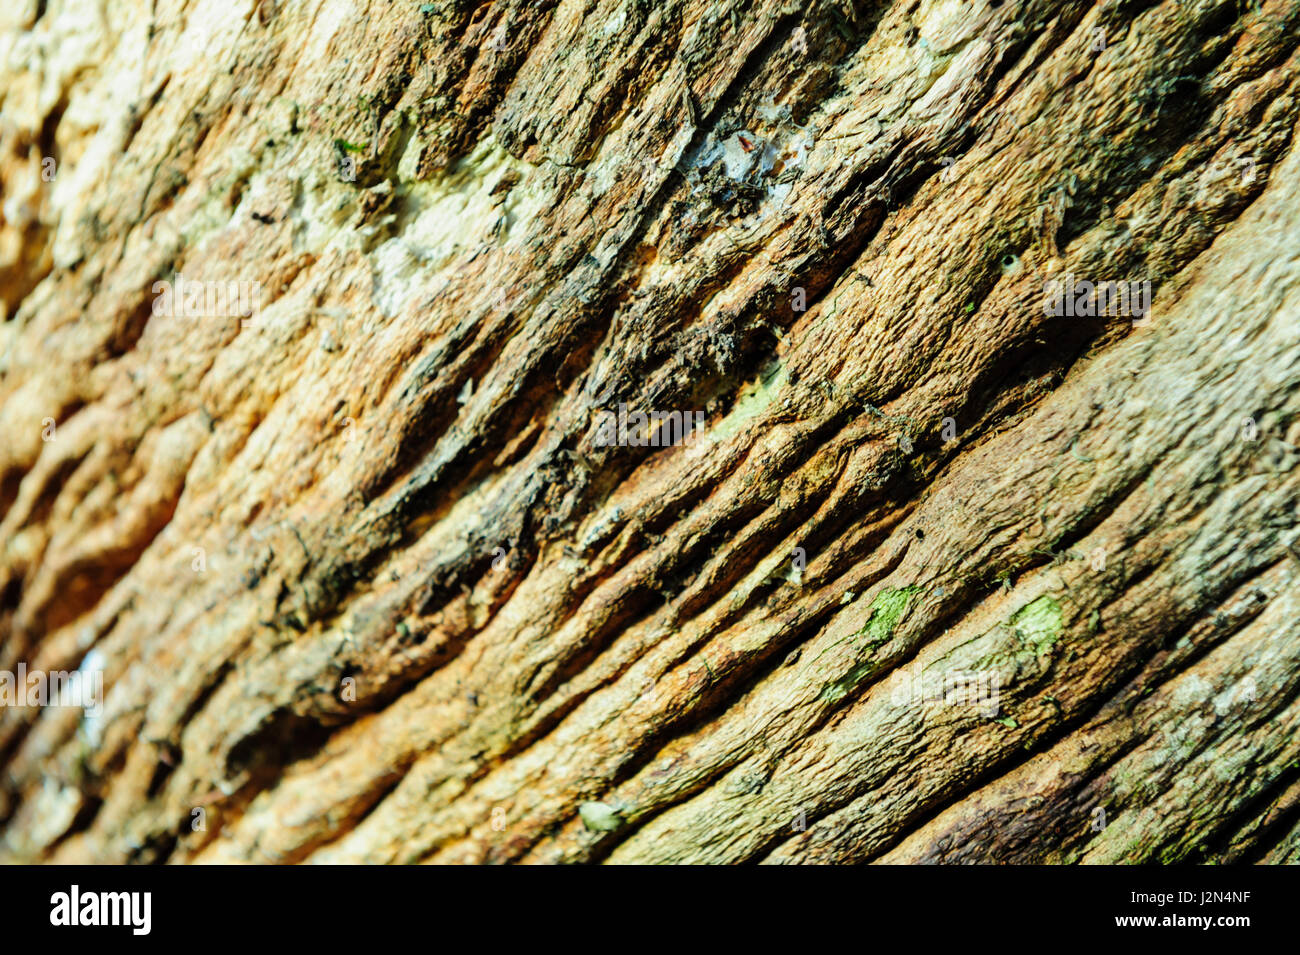 Legno sfondo texture di close-up di vecchio legno morto che è macchiato e snocciolate con una superficie ruvida la superficie. Foto Stock